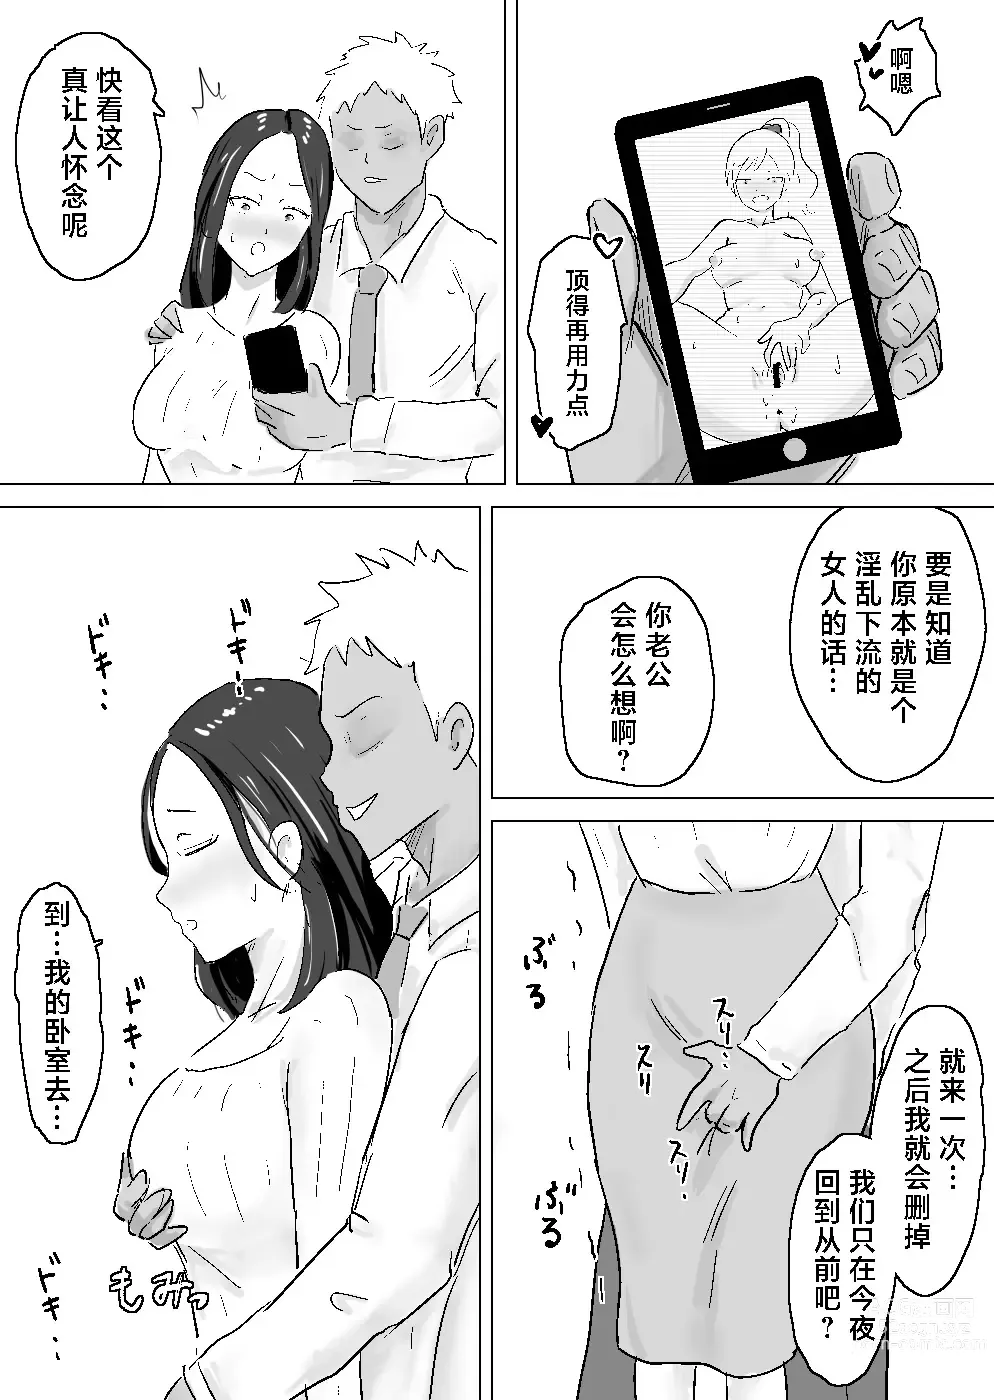 Page 6 of doujinshi 适合黑长直的人妻被轻佻的前男友睡跑了